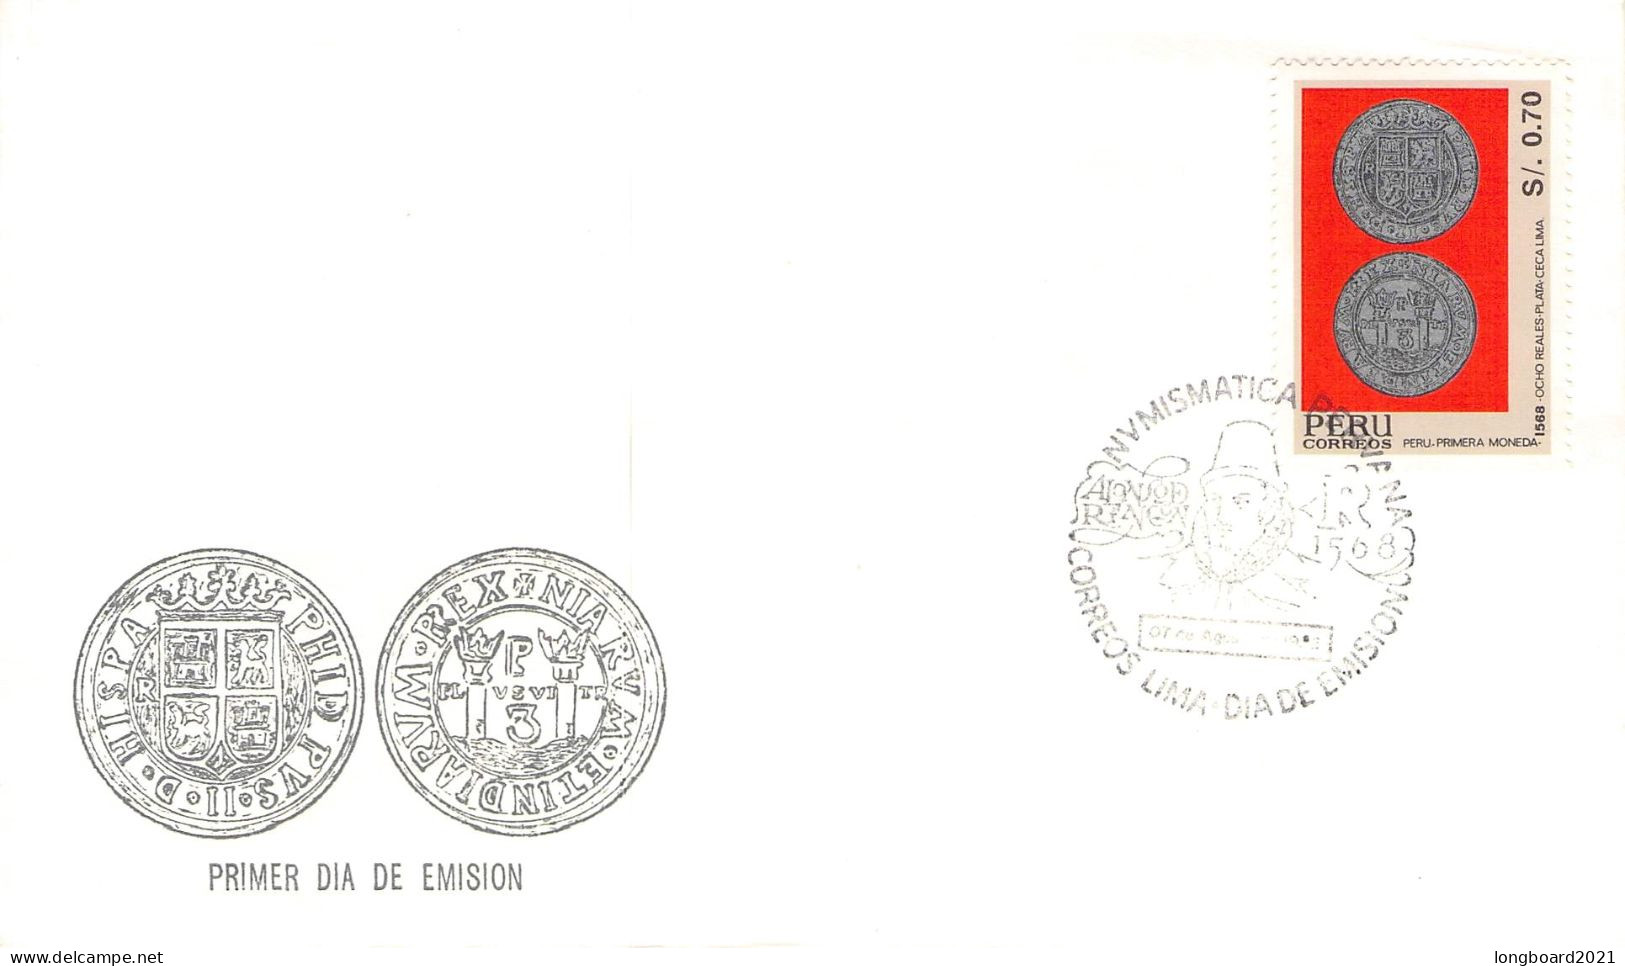 PERÚ - 3 DIFF. COVERS 1987-1991 /689 - Peru